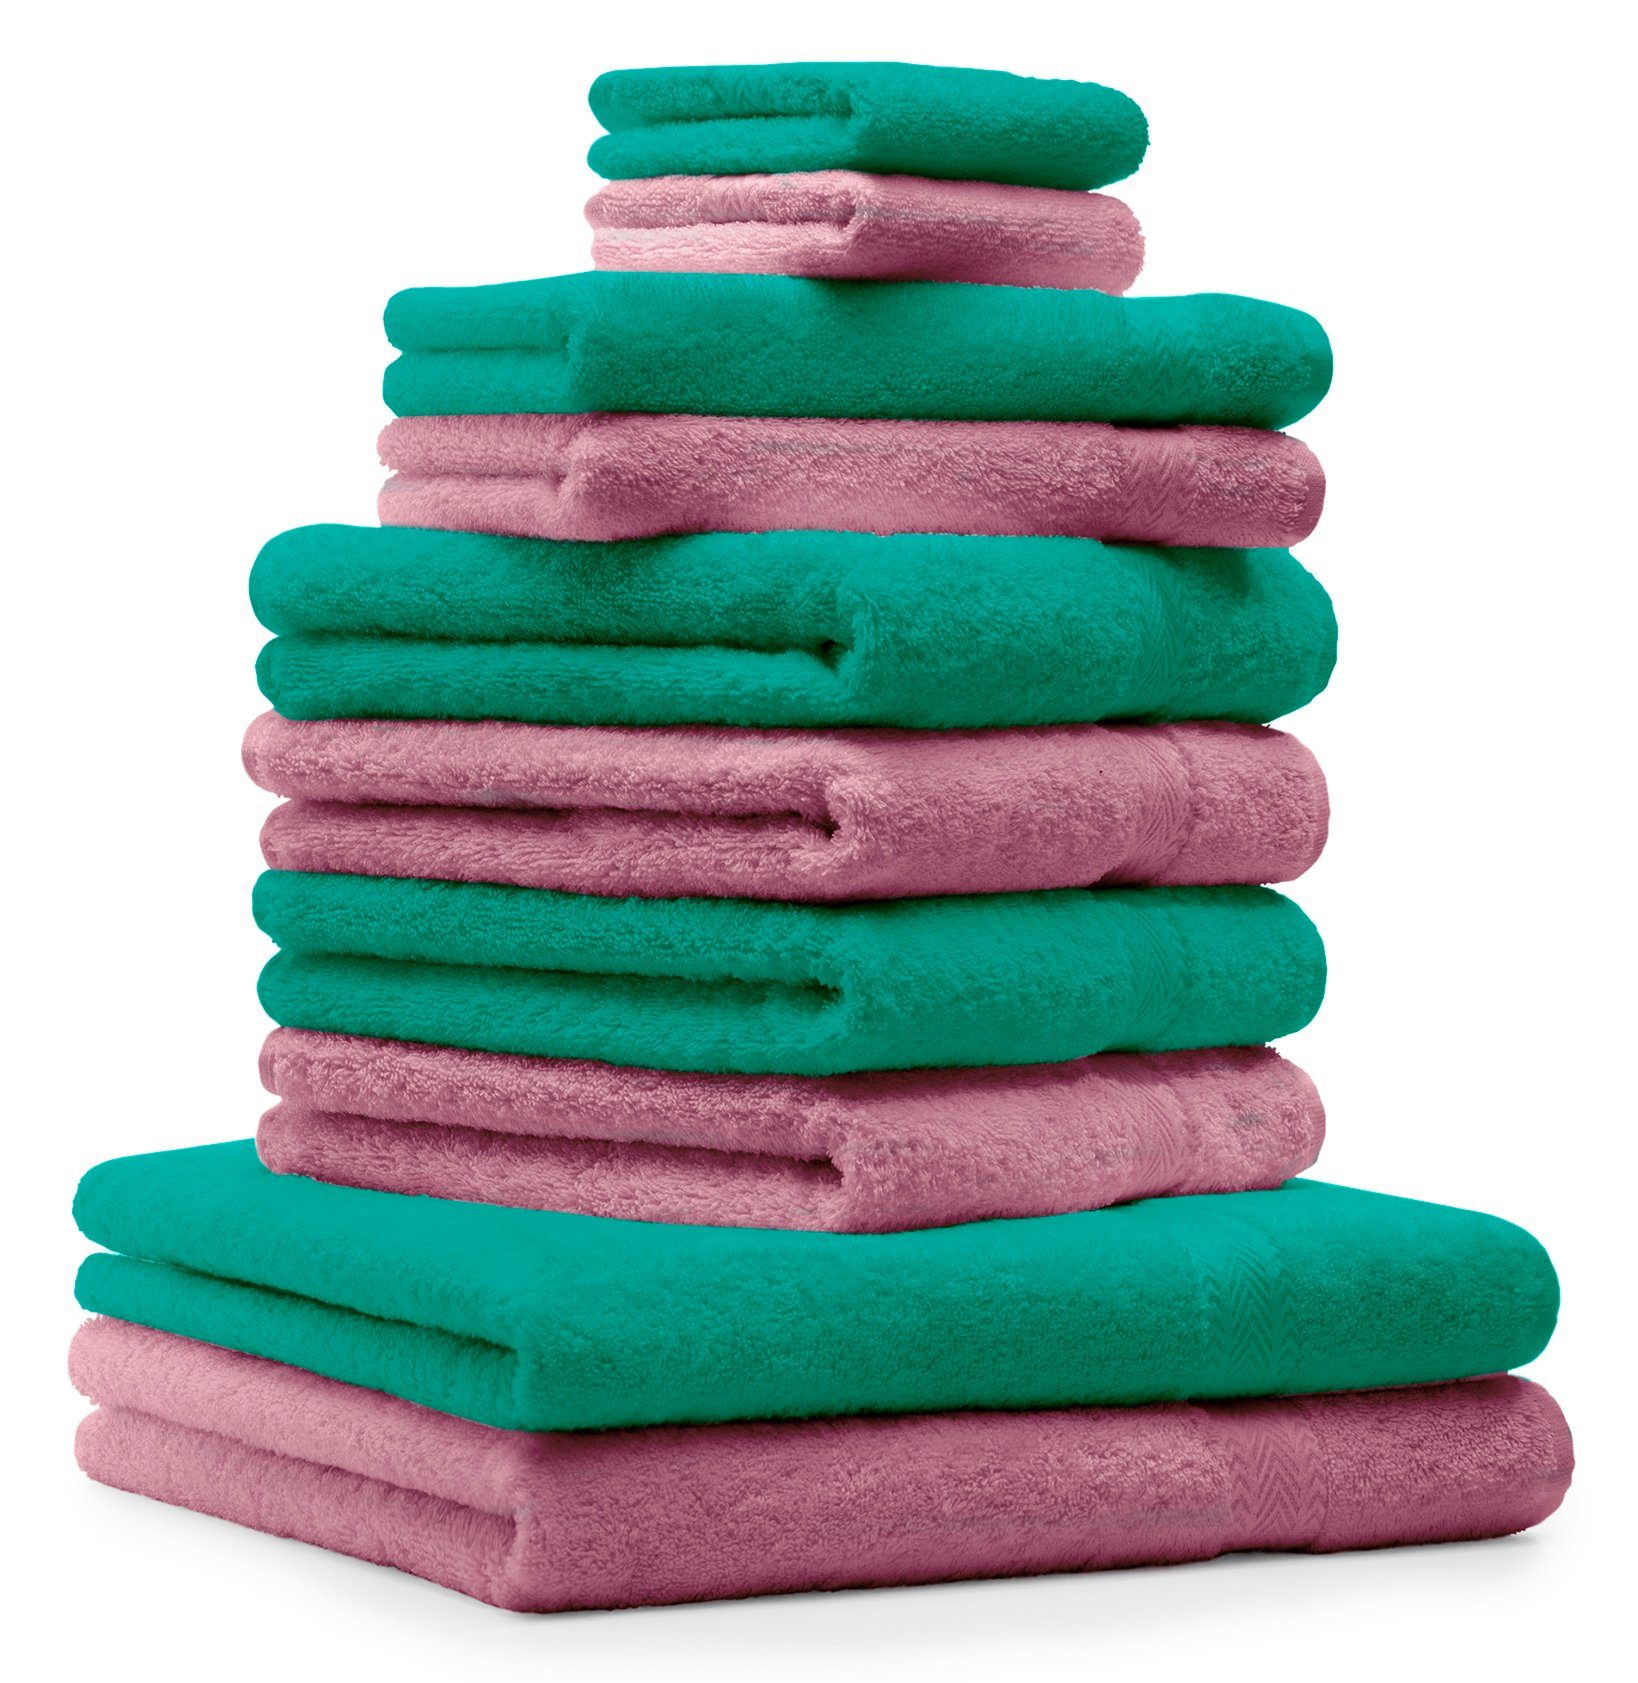 Betz Handtuch Set 10-TLG. Handtuch-Set Premium 100% Baumwolle 2 Duschtücher 4 Handtücher 2 Gästetücher 2 Waschhandschuhe Farbe Smaragd Grün & Altrosa, 100% Baumwolle